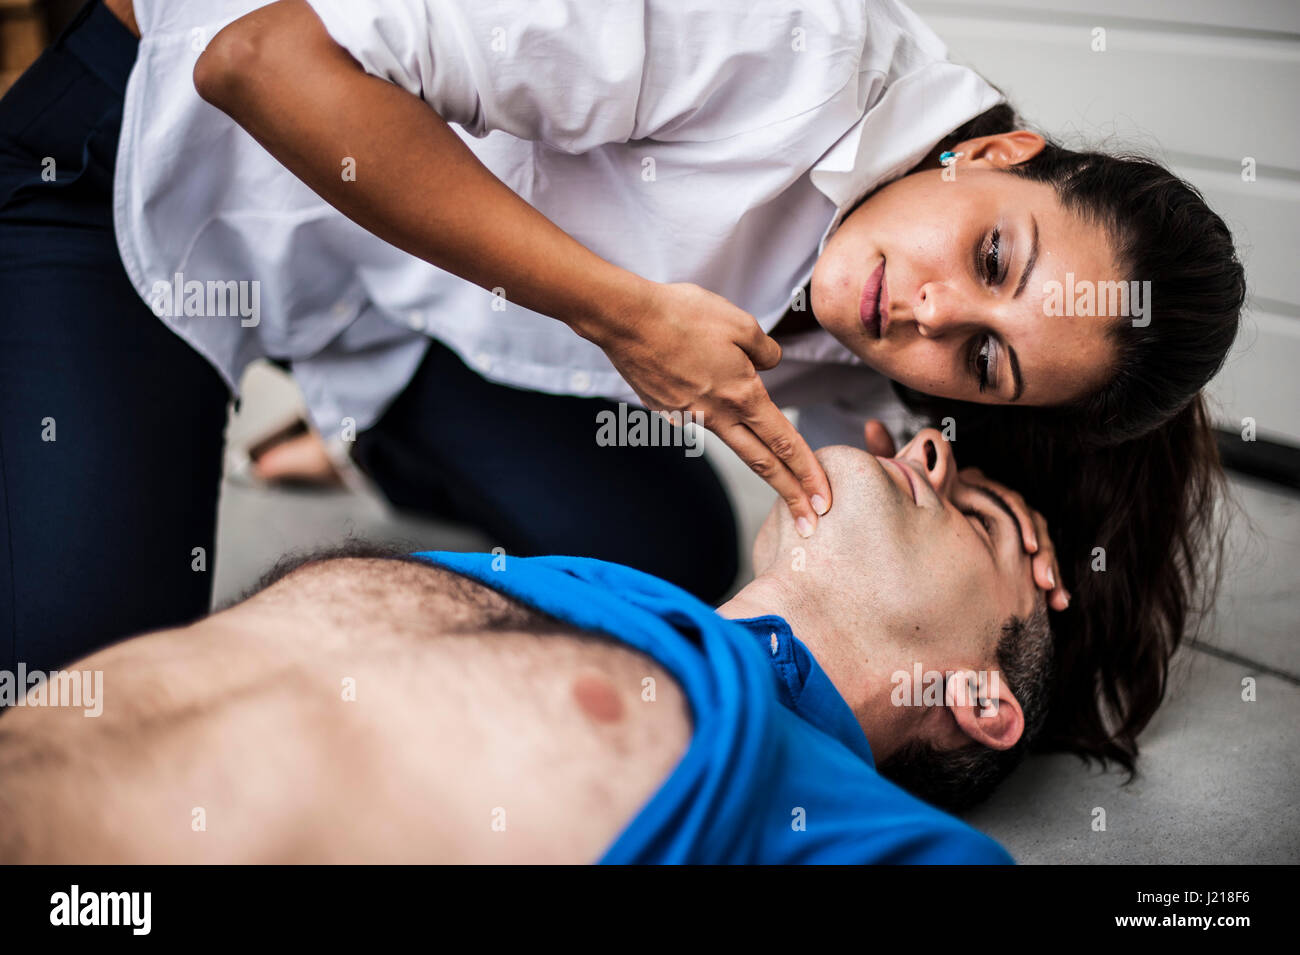 Una ragazza aiutando un ragazzo dopo un attacco di cuore con la rianimazione cardiopolmonare Foto Stock